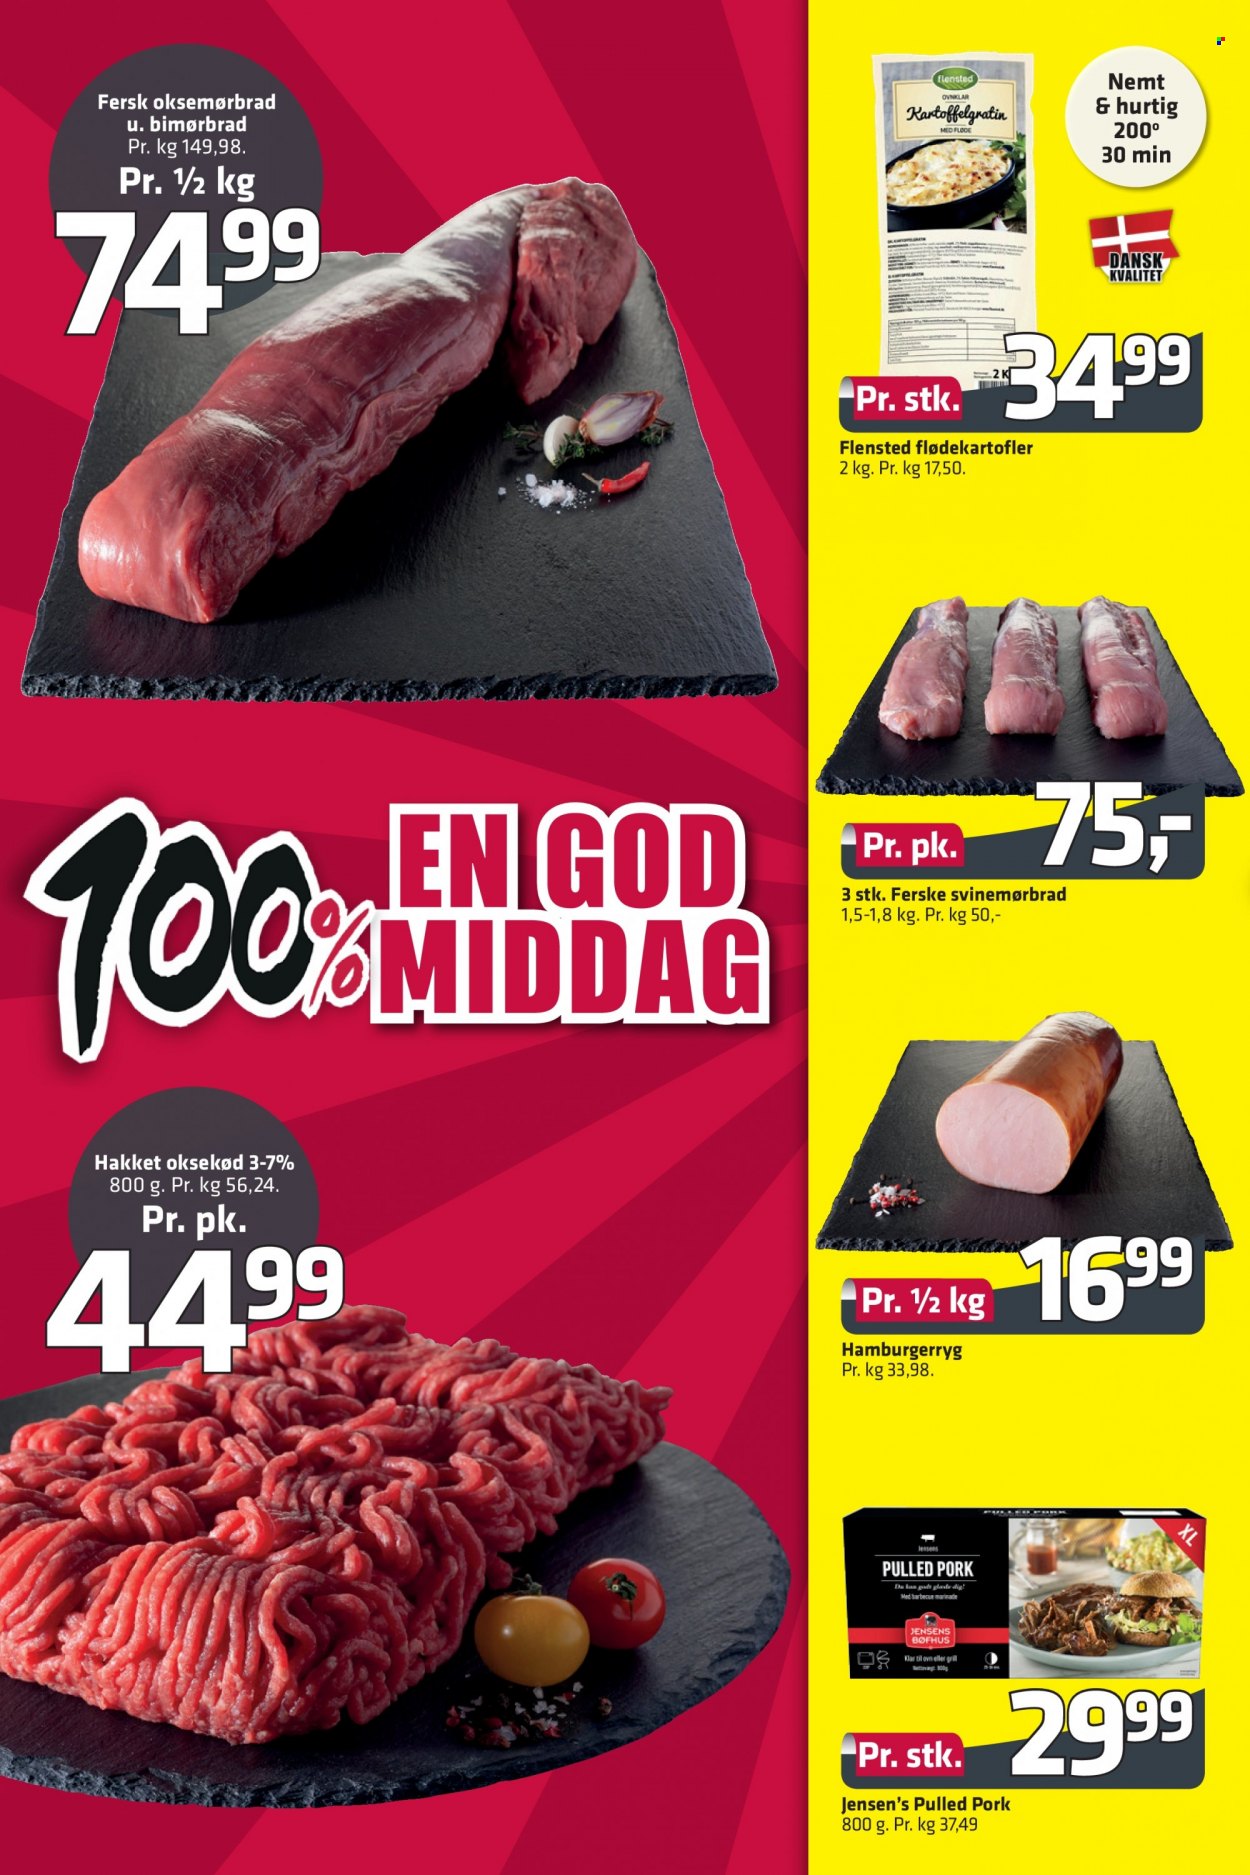 thumbnail - Fleggaard tilbud  - 5.1.2022 - 8.2.2022 - tilbudsprodukter - hakket oksekød, oksemørbrad, oksekød, hamburgerryg, svinemørbrad, grisekød, pulled pork, flødekartofler. Side 14.